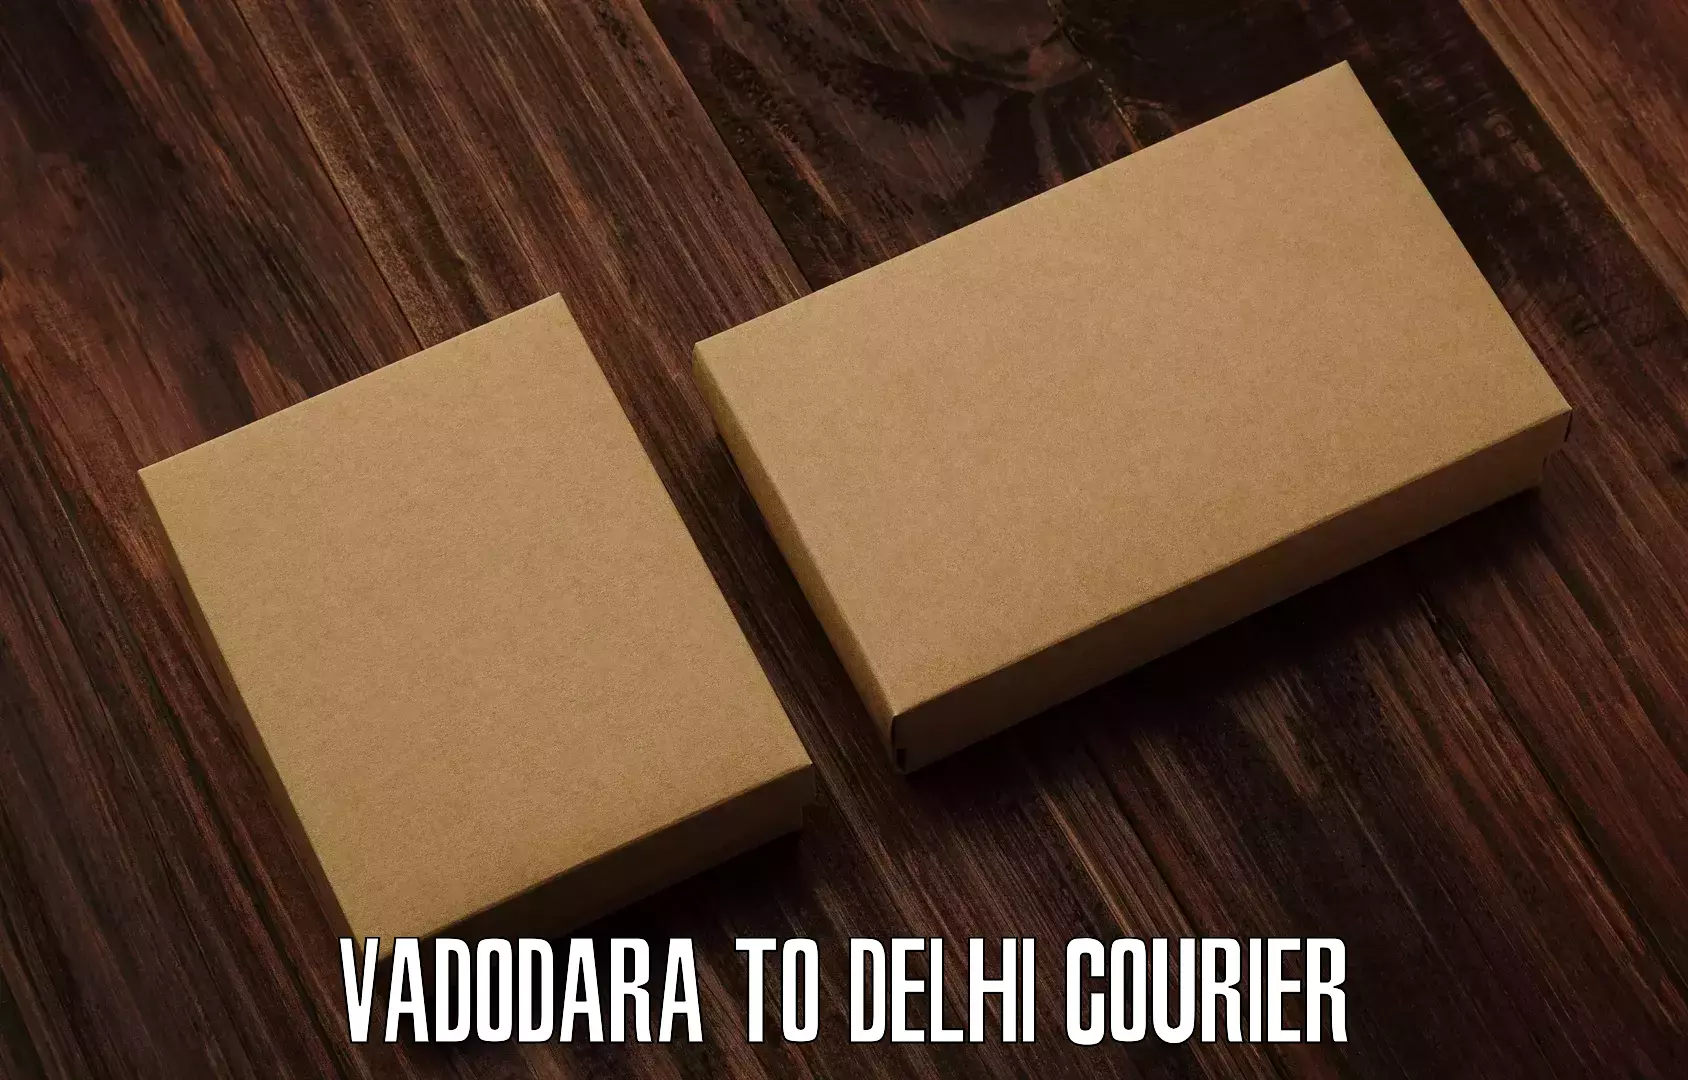 Express delivery solutions Vadodara to Delhi